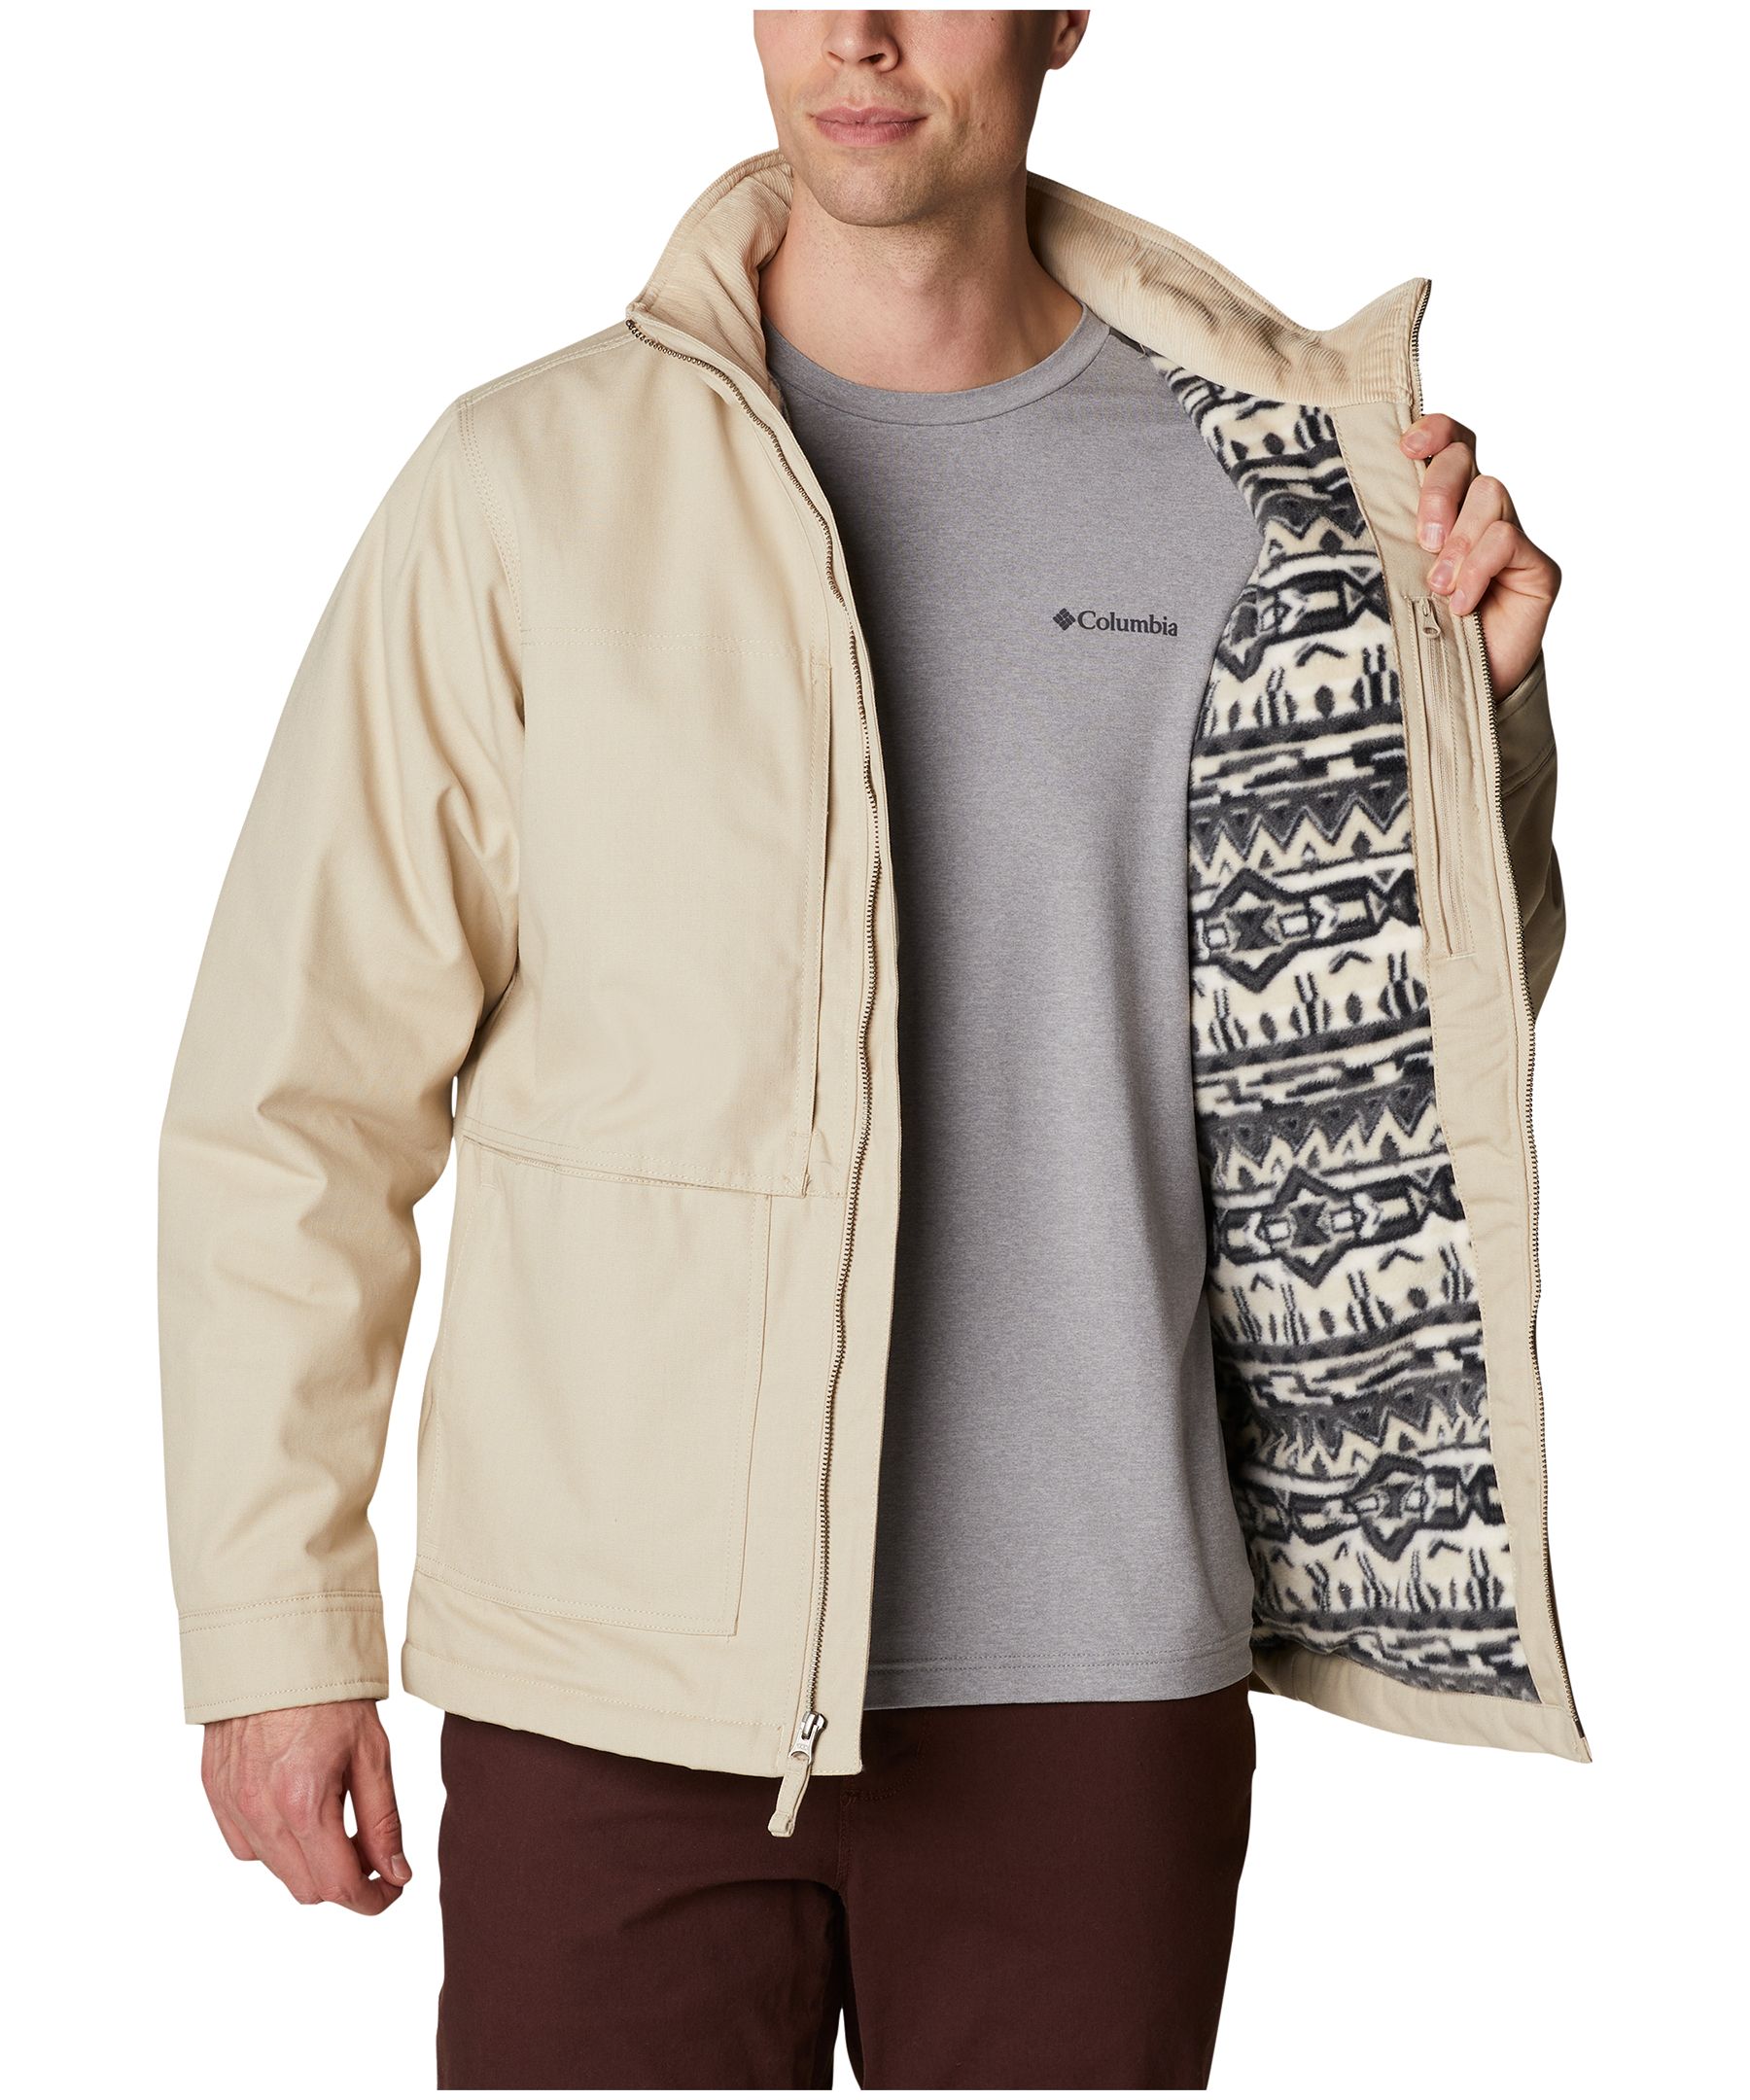 Columbia Men's Loma Vista™ II Water-Resistant Fleece-Lined Jacket - Macy's